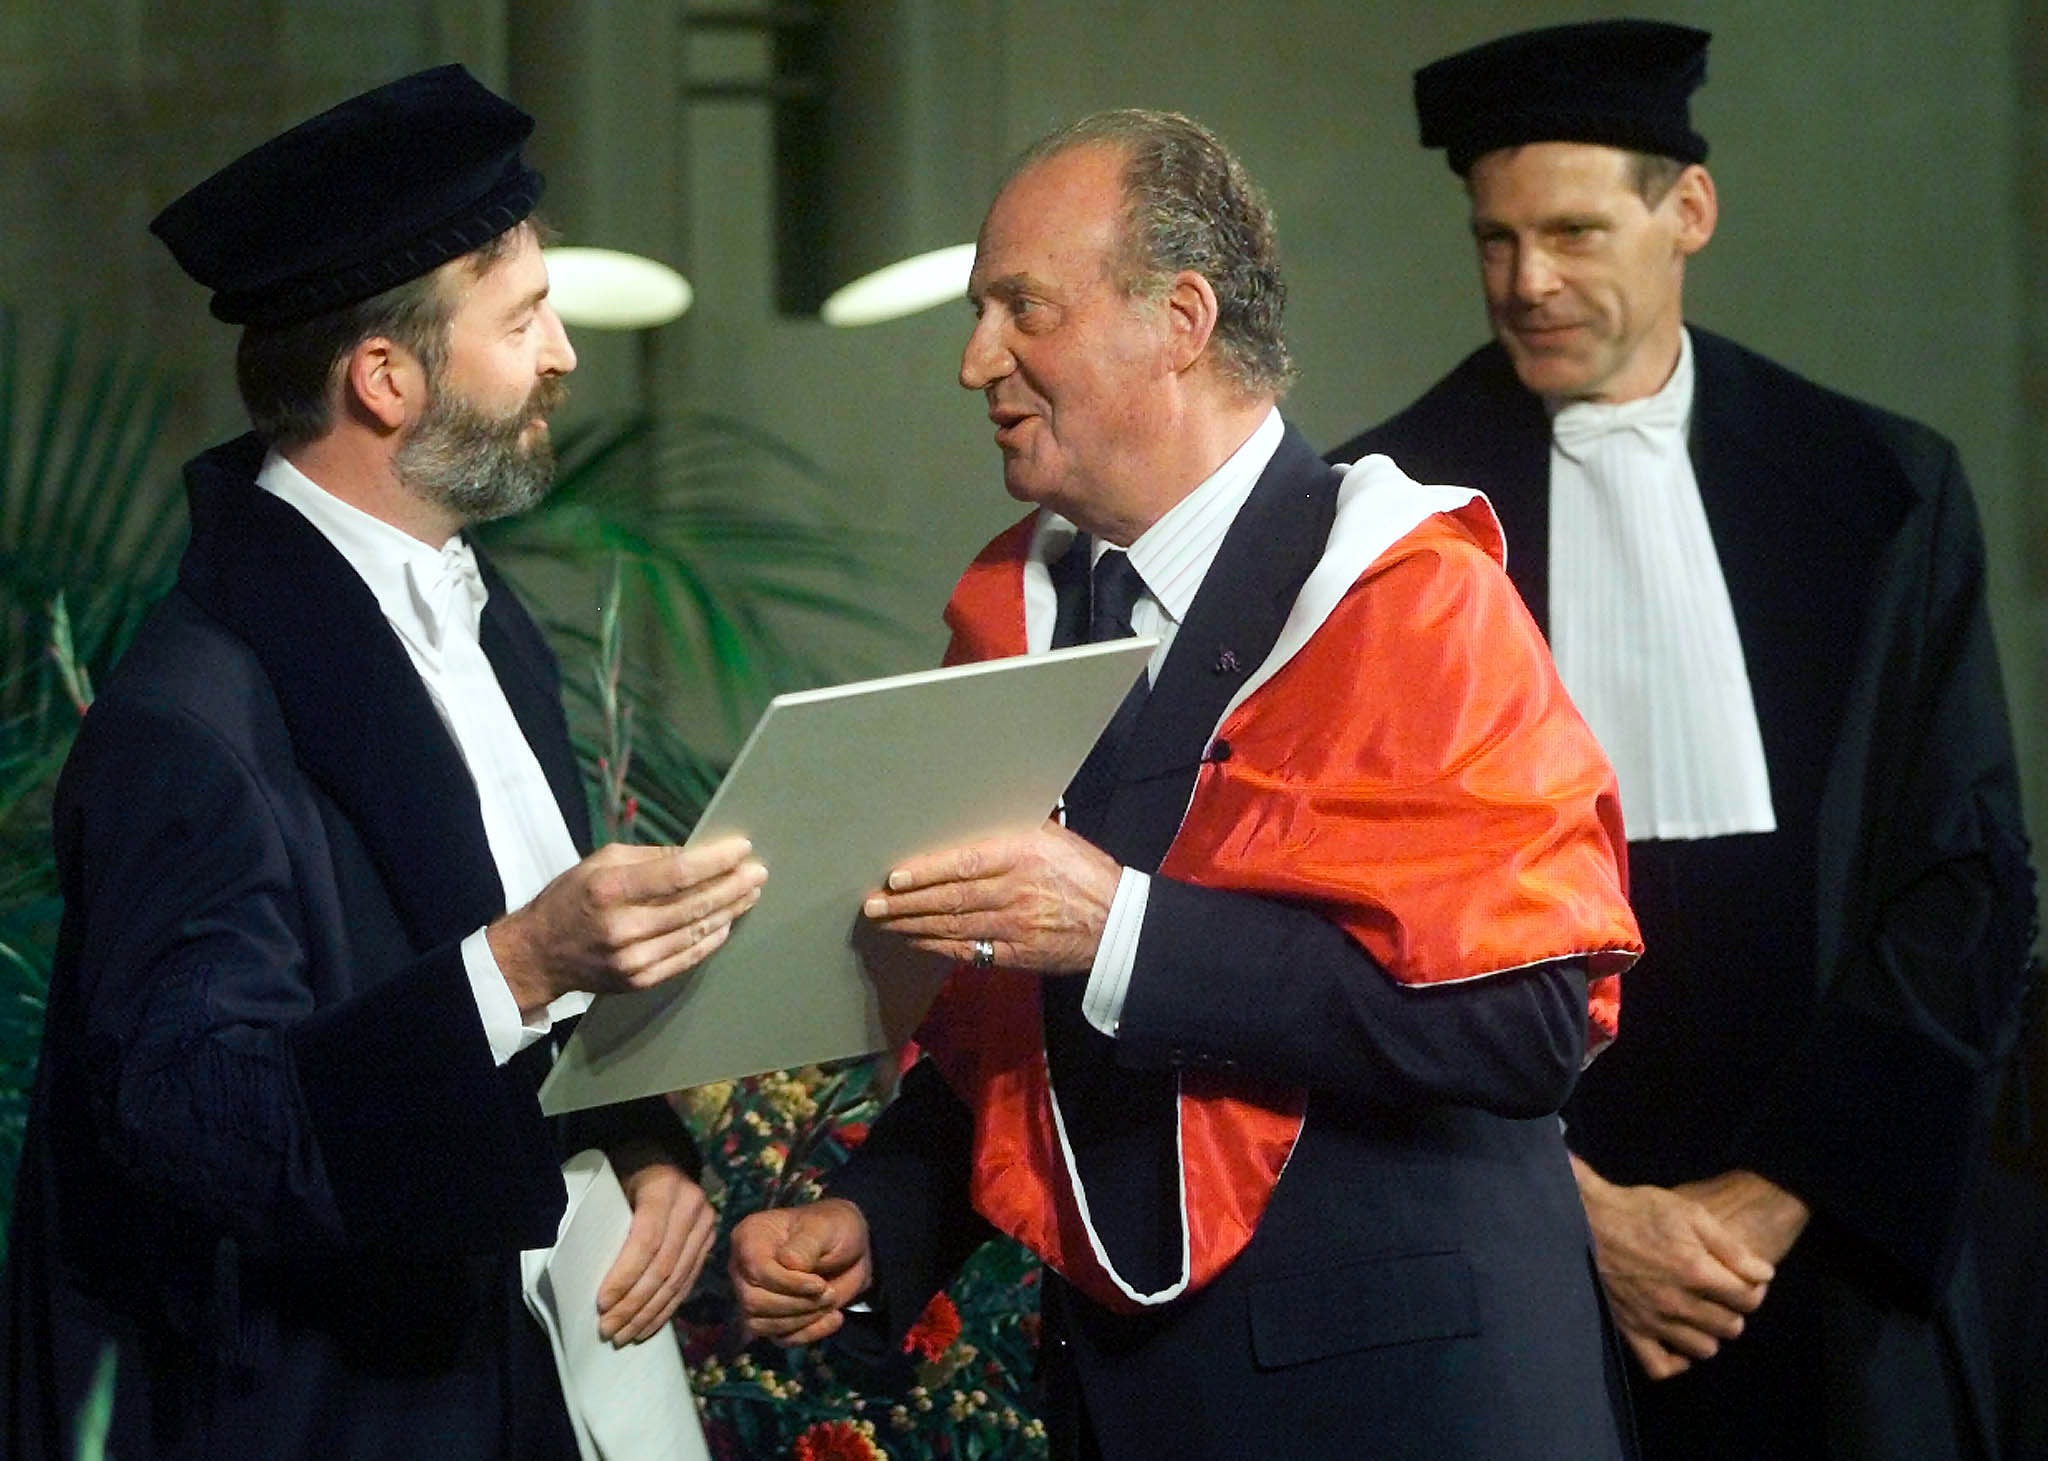 Koning Juan Carlos ontvangt een eredoctoraat van de Universiteit van Utrecht uit handen van prof. Kummeling.